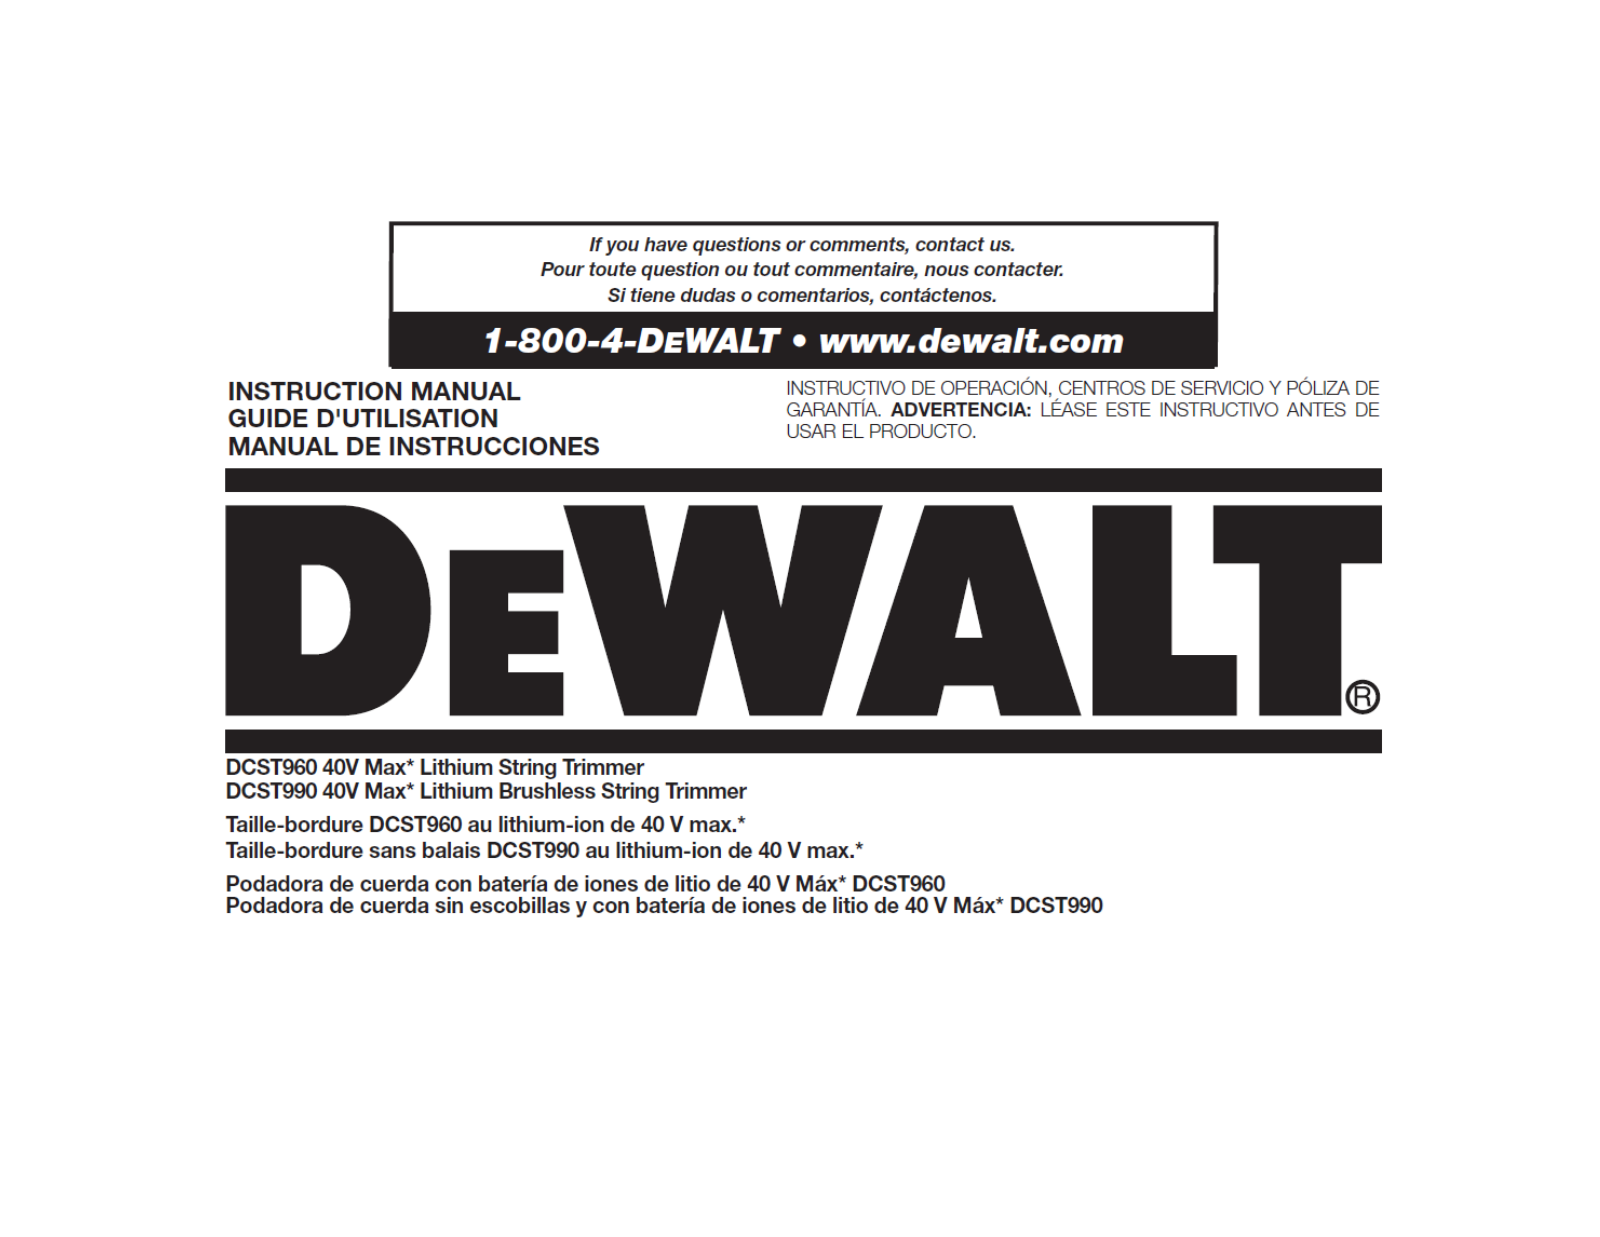 Dewalt DCST990, DCST960 User Manual